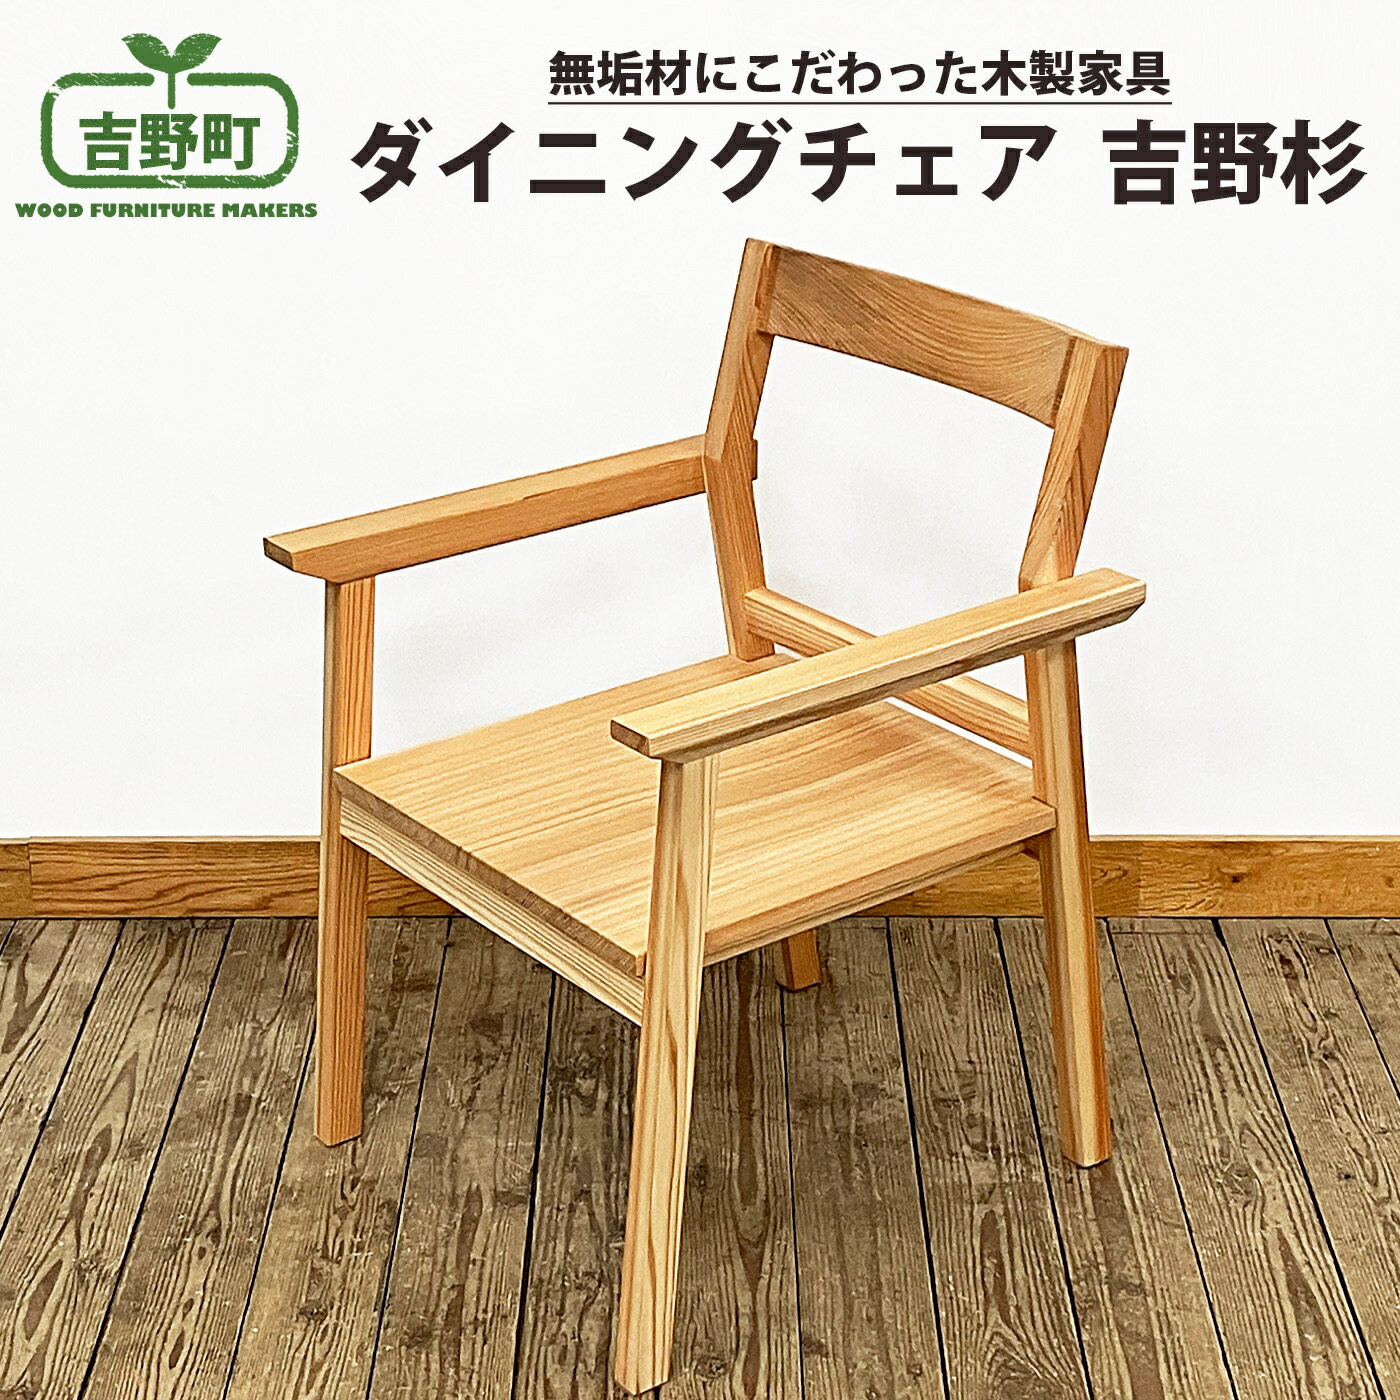 【ふるさと納税】吉野杉 ダイニングチェア 1脚 椅子 家具 スギ 奈良県 吉野町